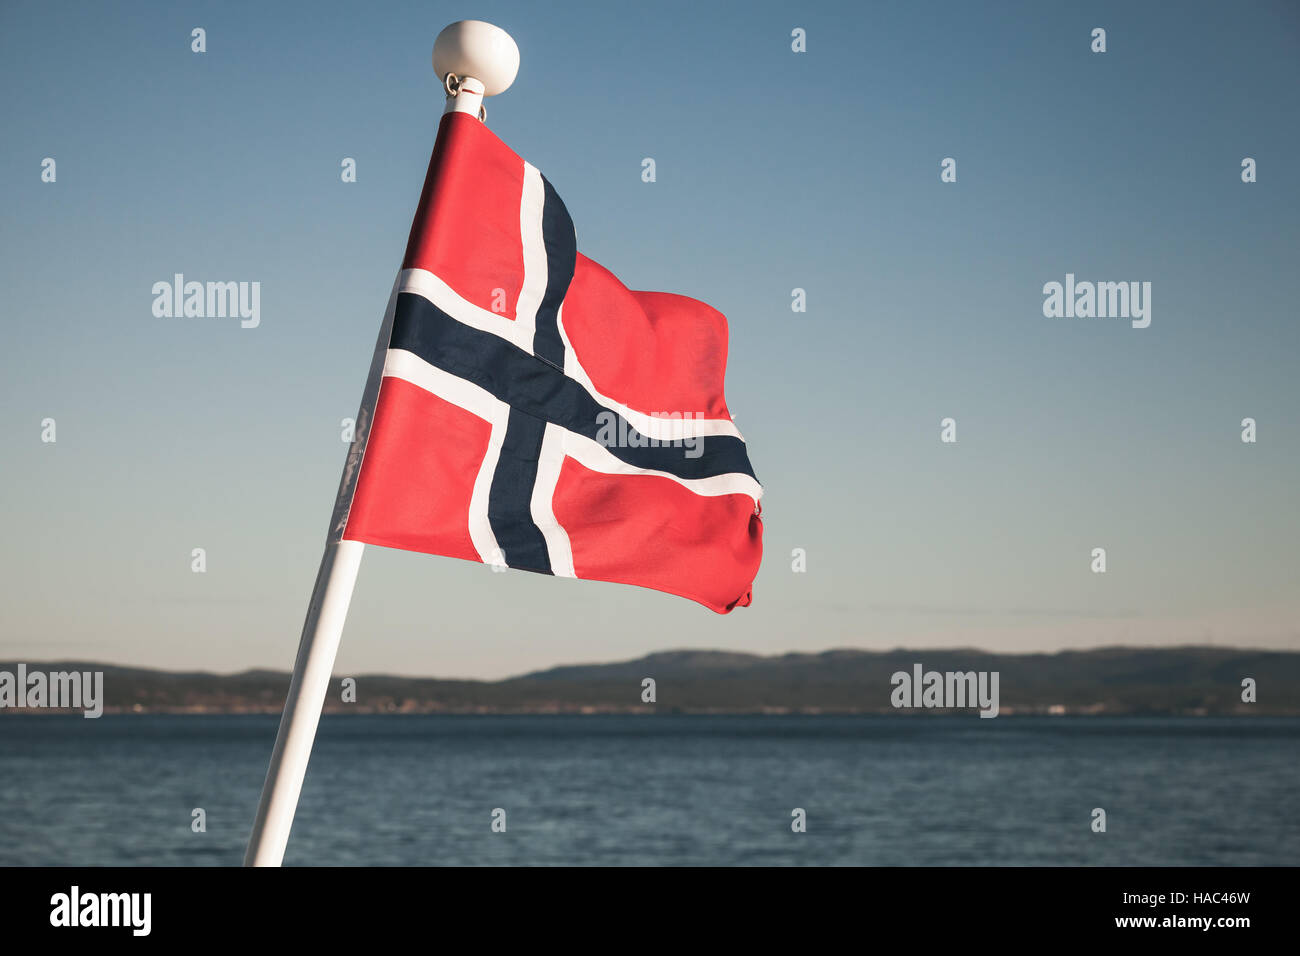 De brandir le drapeau national norvégien sur fond de ciel bleu, vintage photo aux tons Banque D'Images